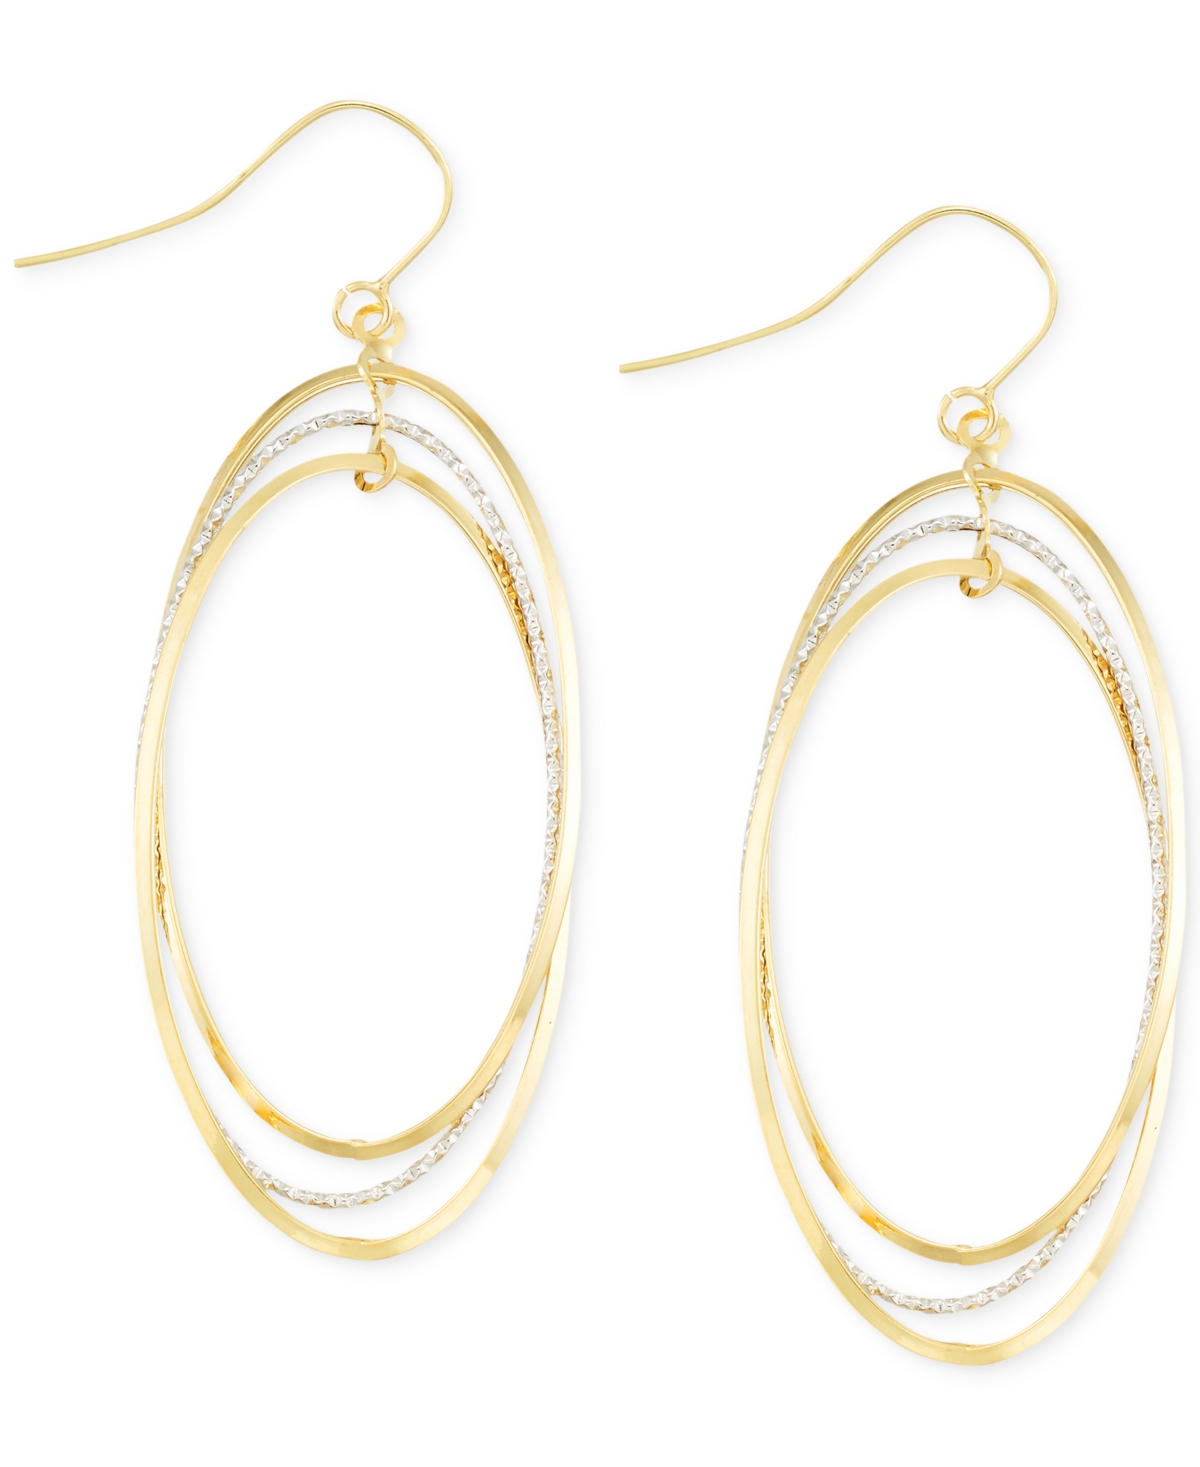 Two-Tone Oval Hoop Earrings in 14k Gold